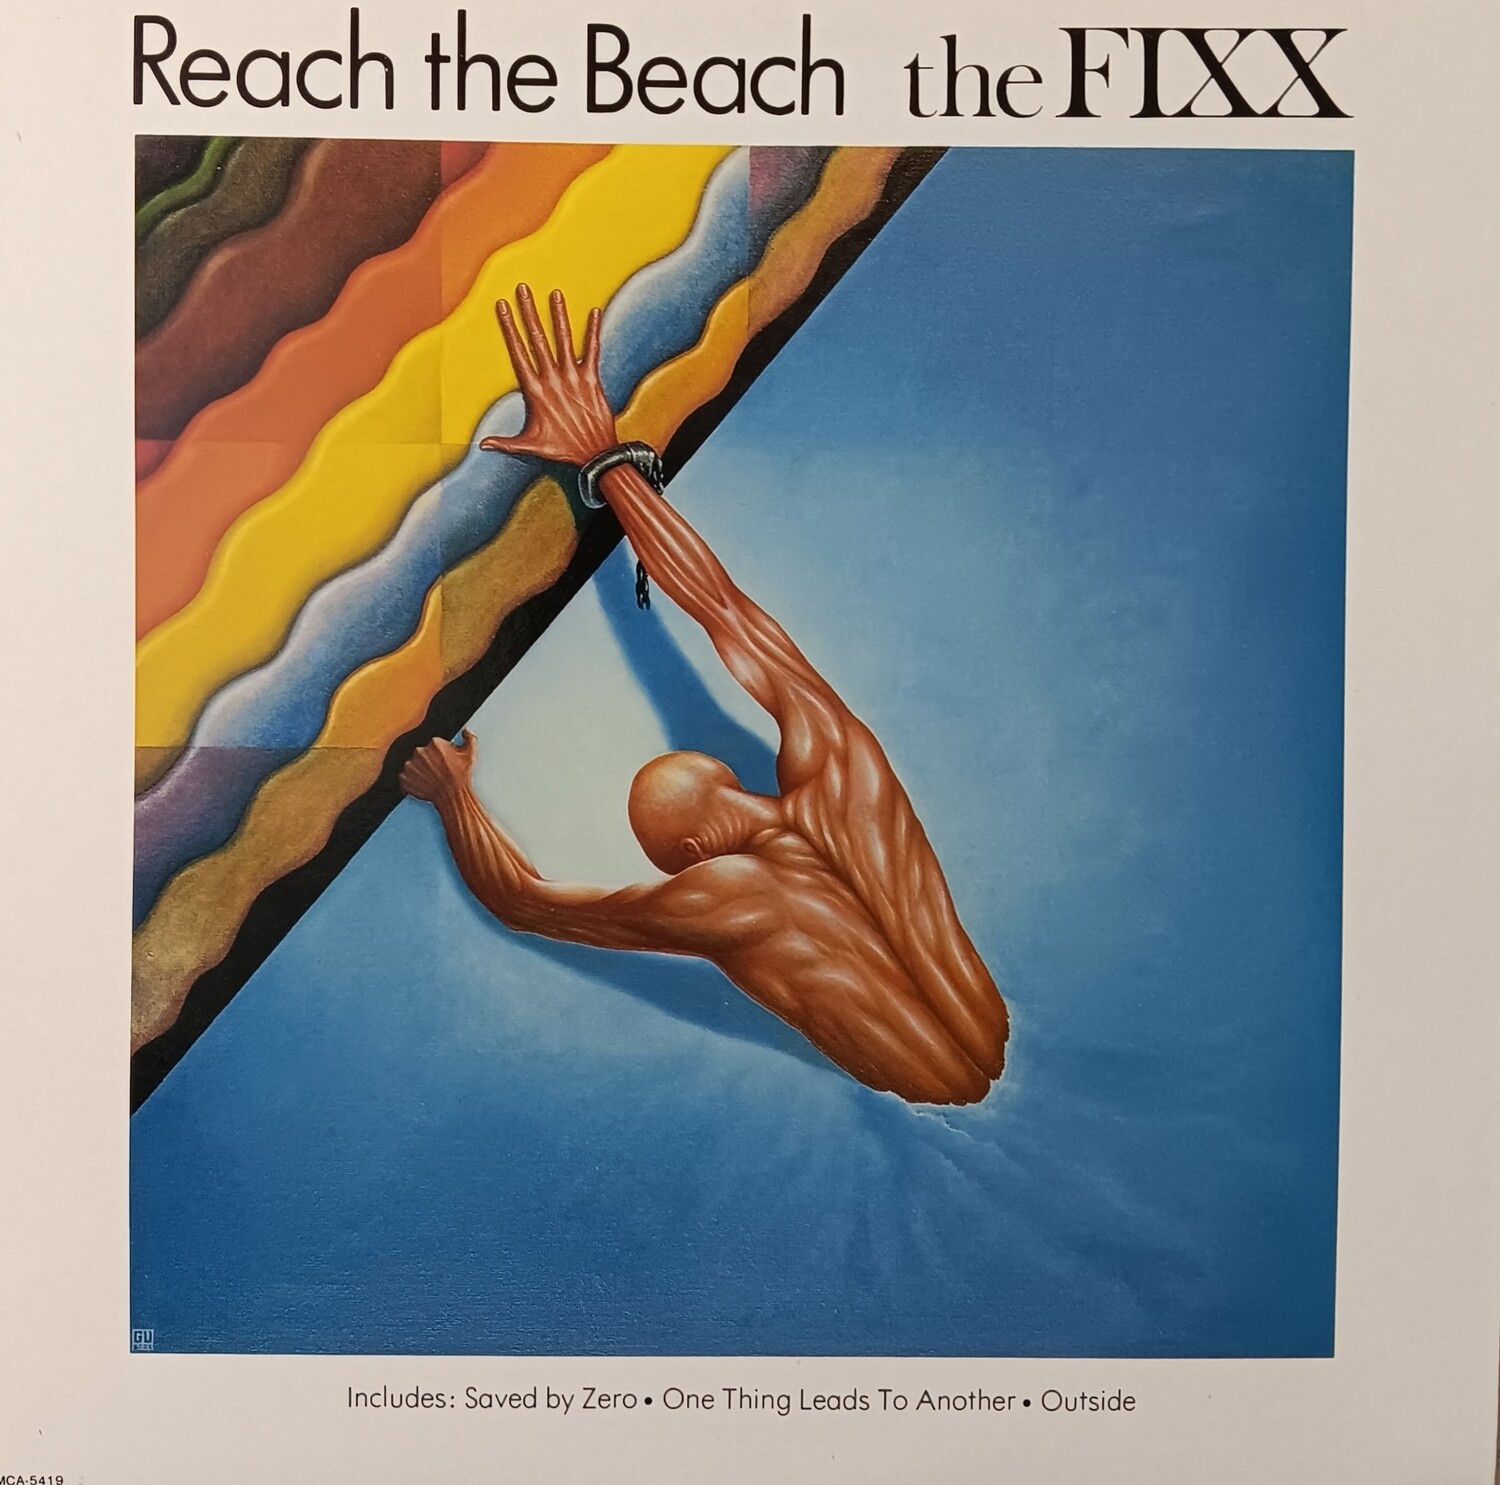 The Fixx - Reach the beach